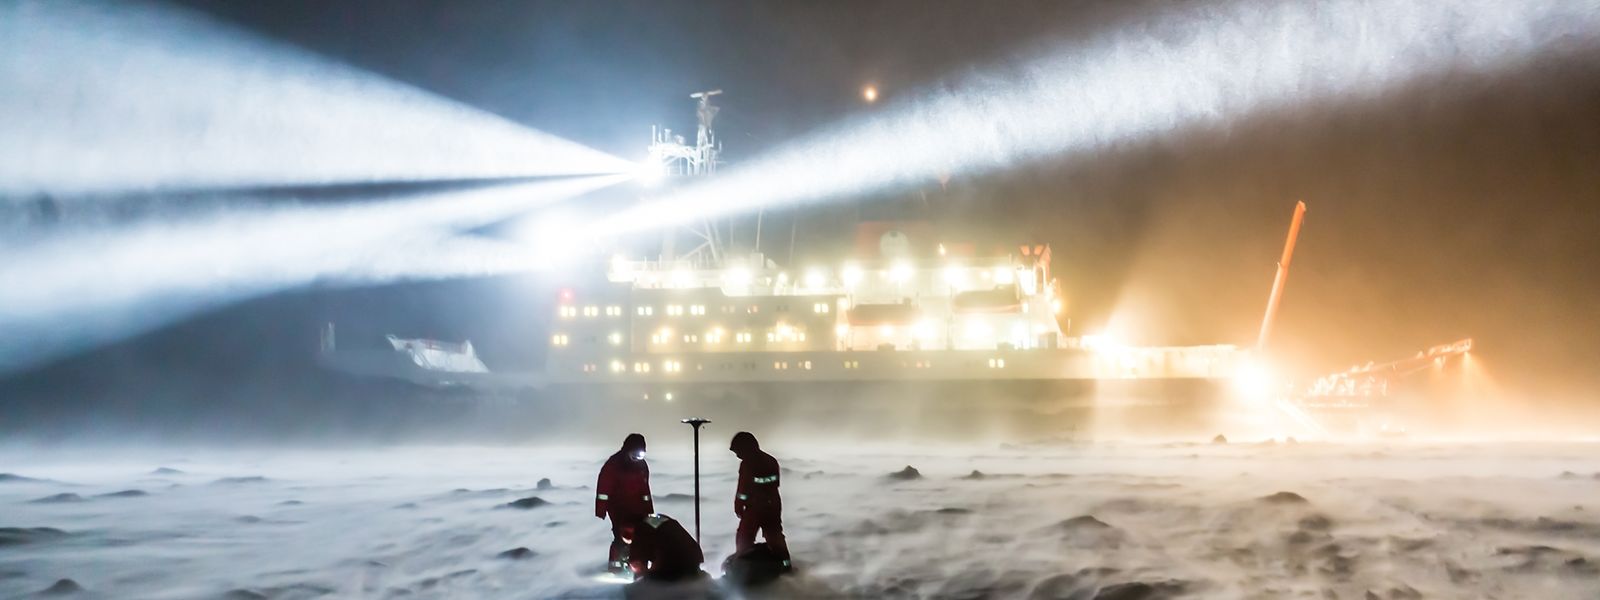 AWI-Meereisphysikers arbeiten bei auffrischendem Wind und zunehmender Schneedrift während einer Polarsternexpedition auf dem Meereis.